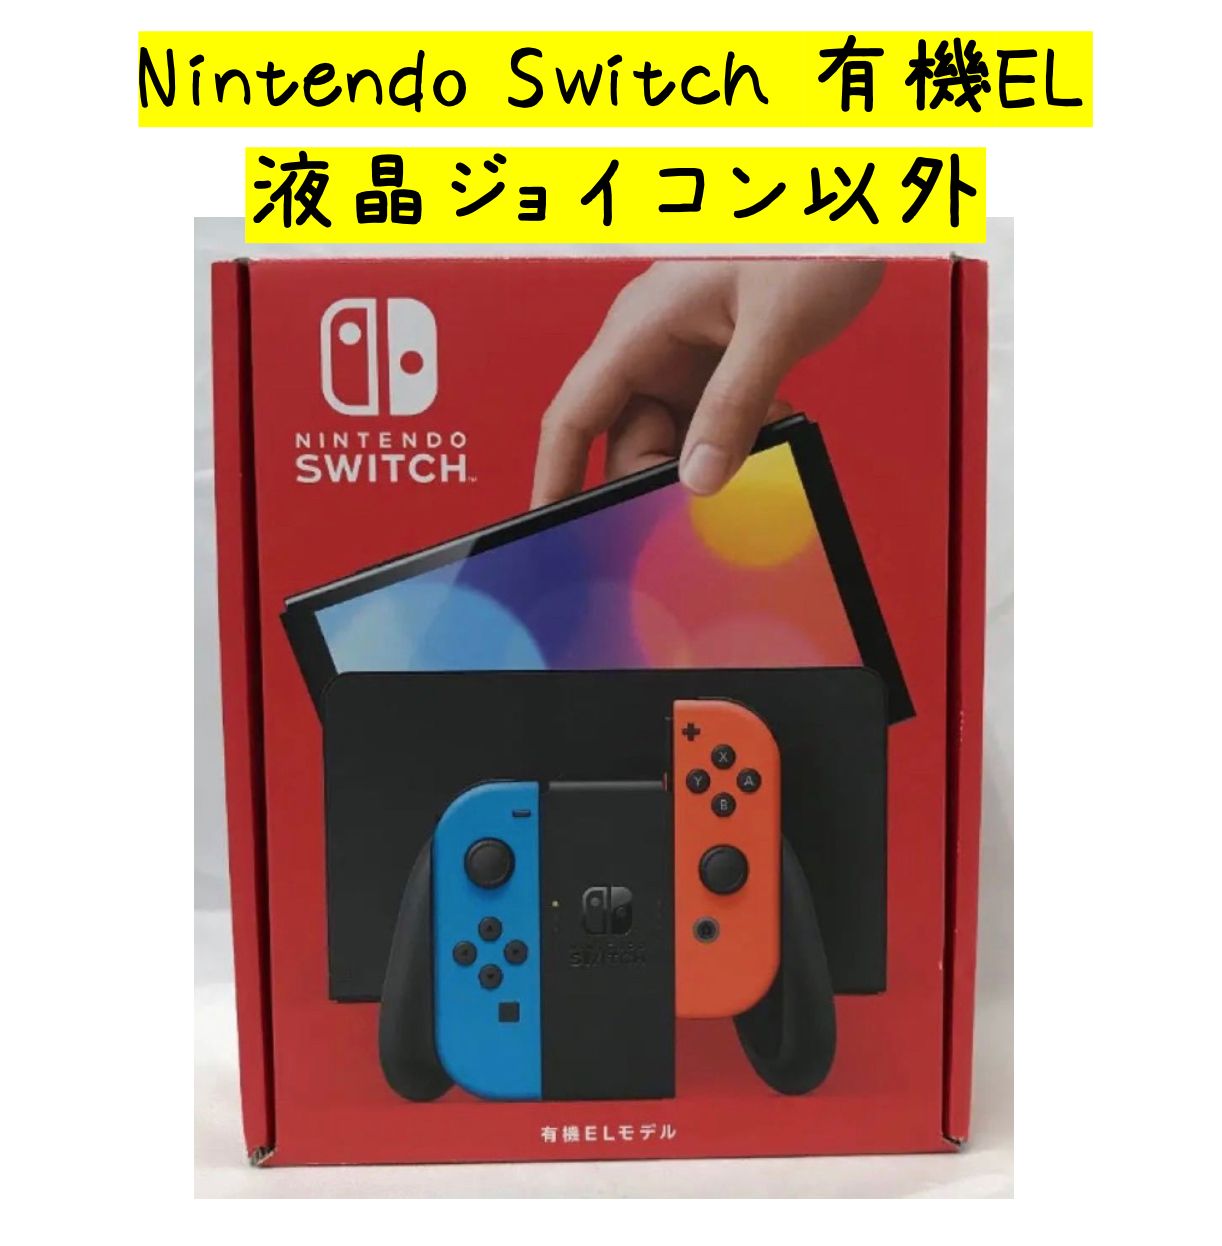 Nintendo Switch 有機EL モデル ネオン